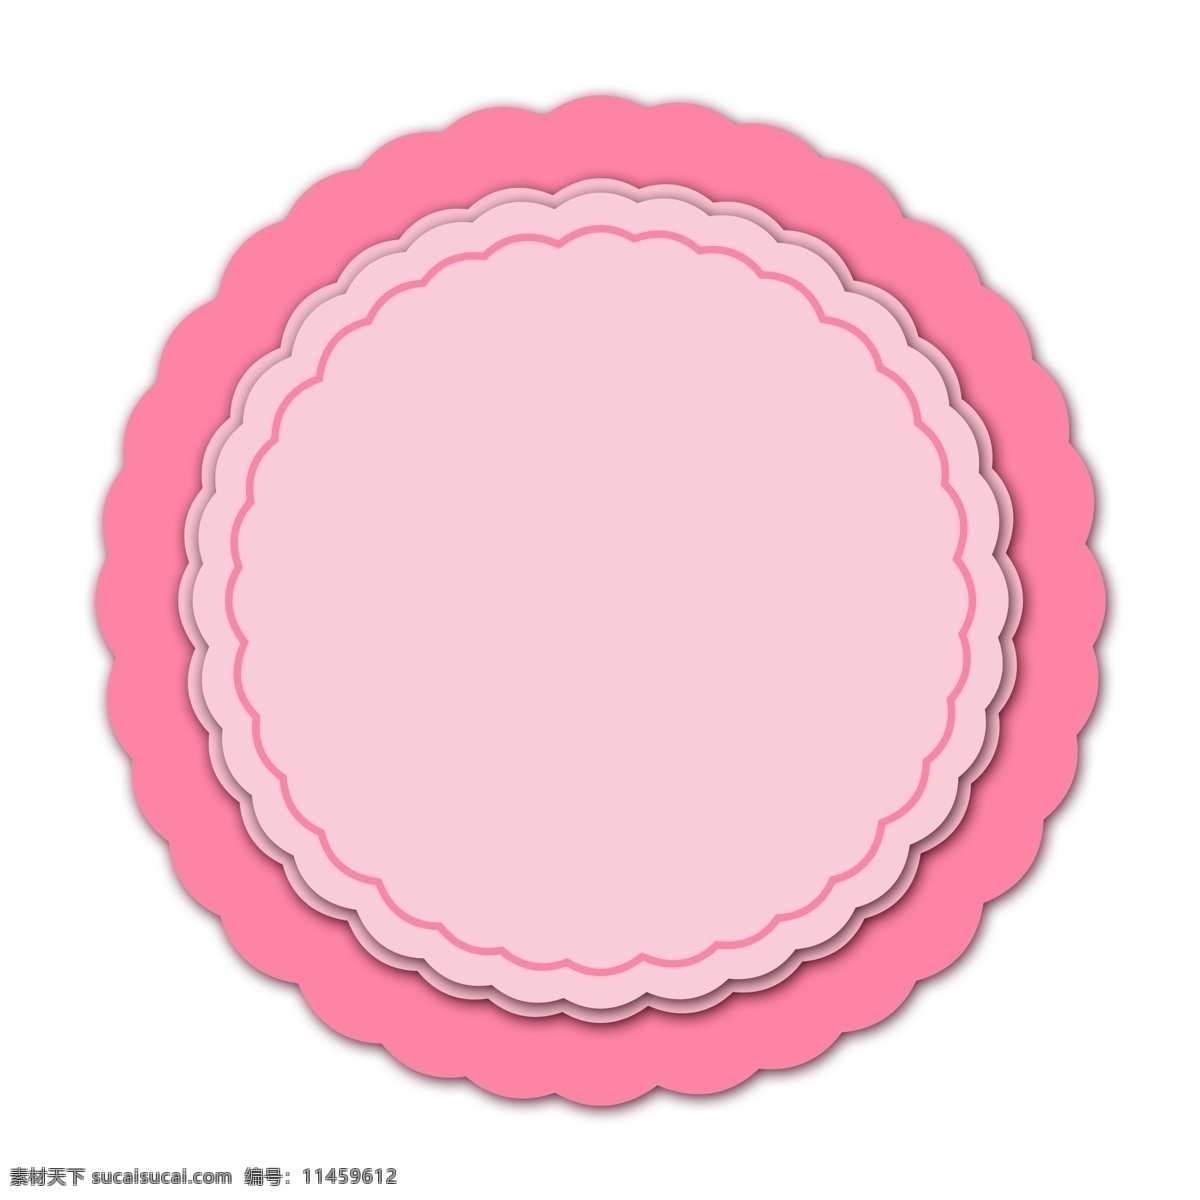 手绘 粉色 圆形 边框 粉色的边框 圆形的边框 漂亮的边框 美丽的边框 卡通边框 手绘边框插画